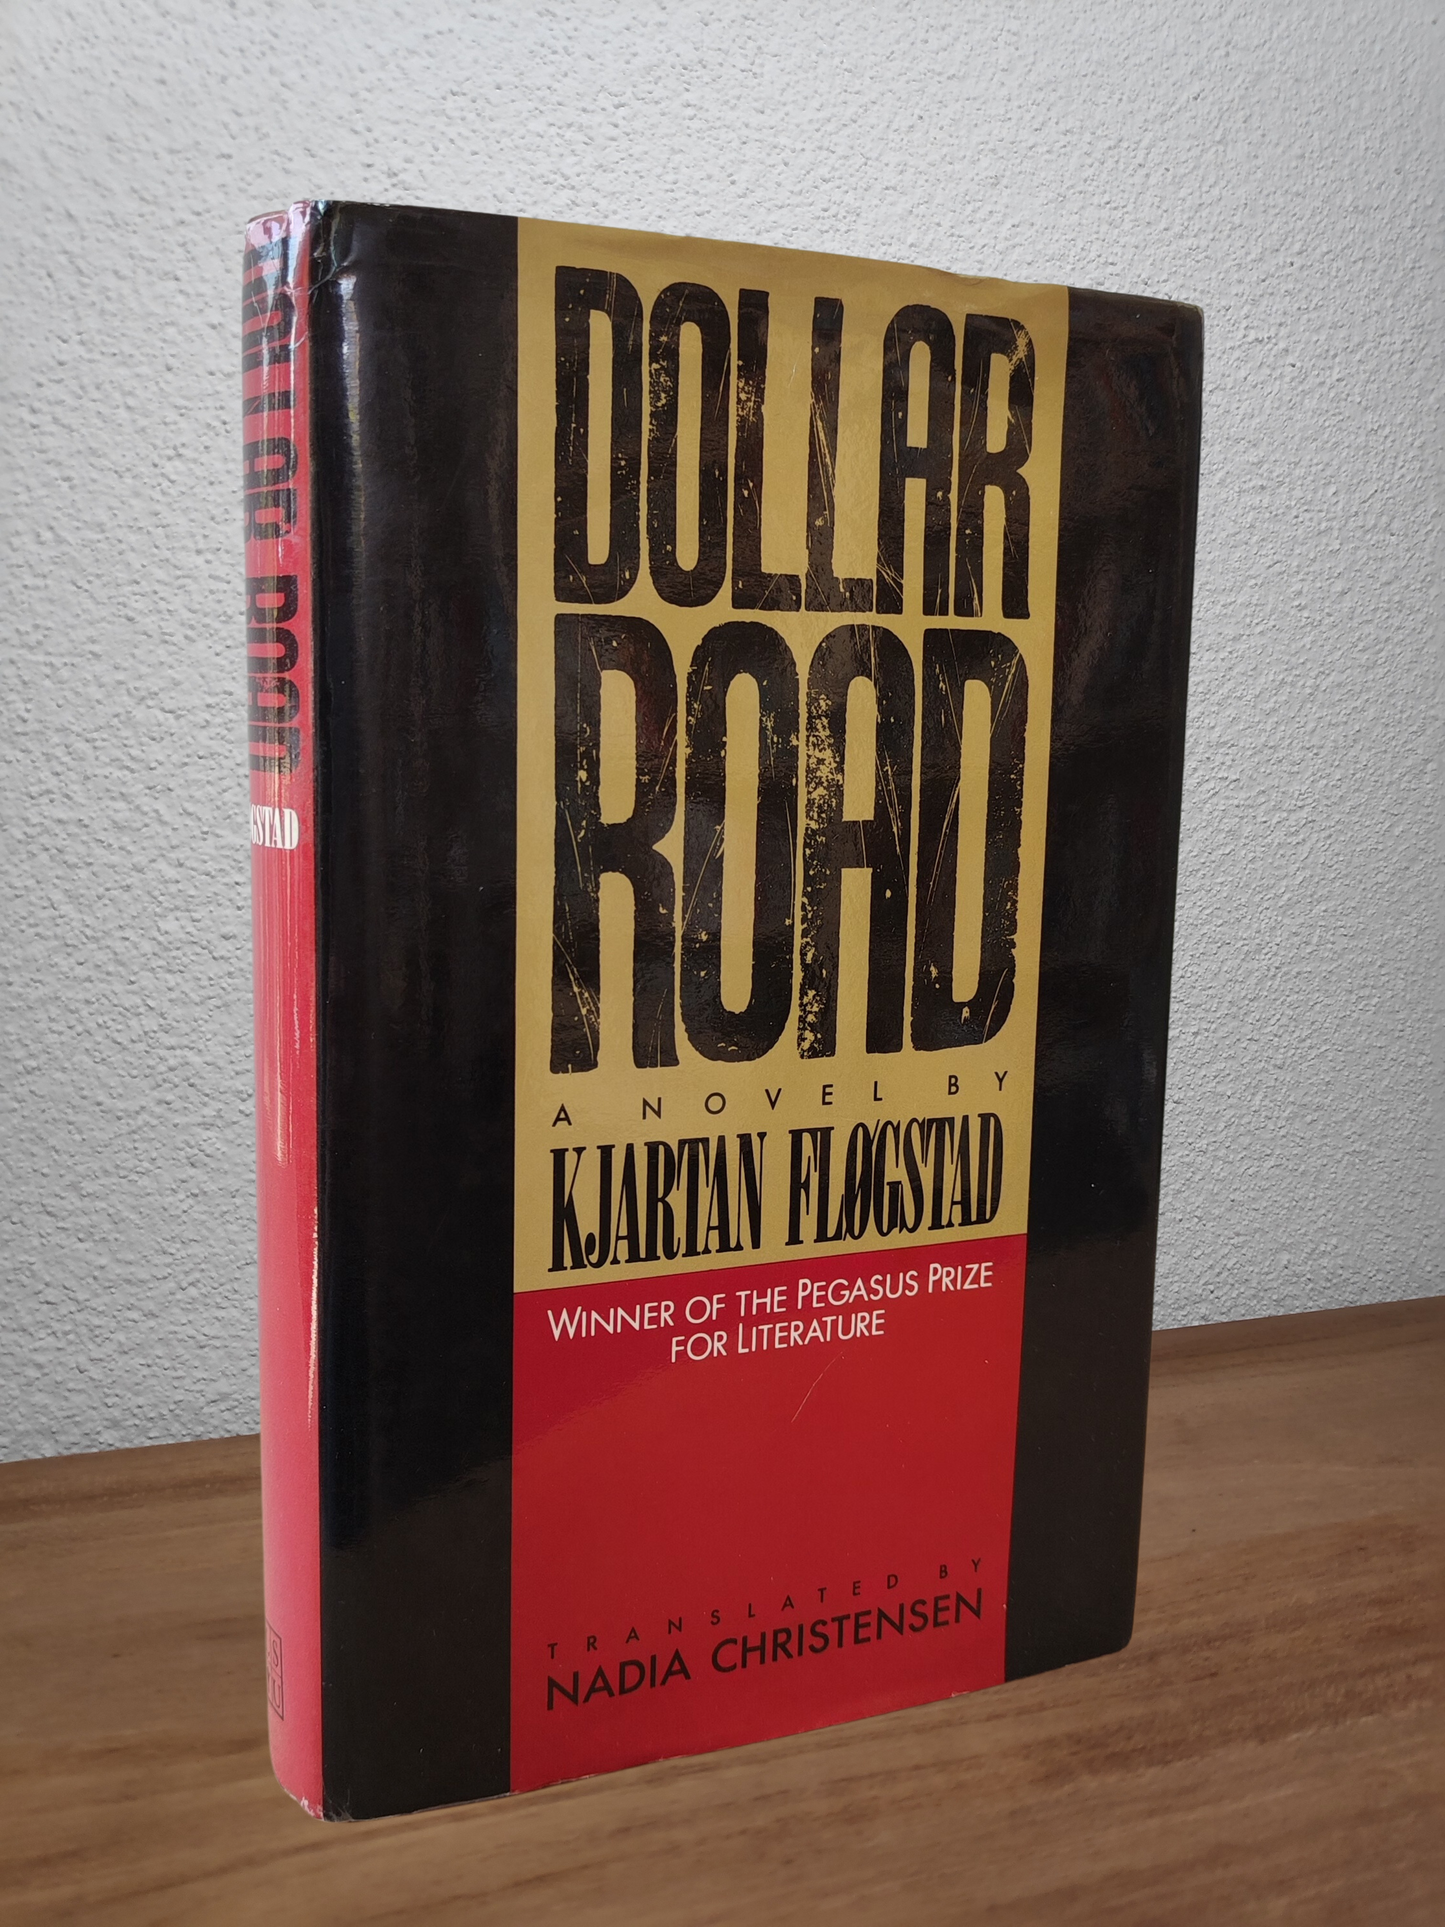 Kjartan Fløgstad - Dollar Road